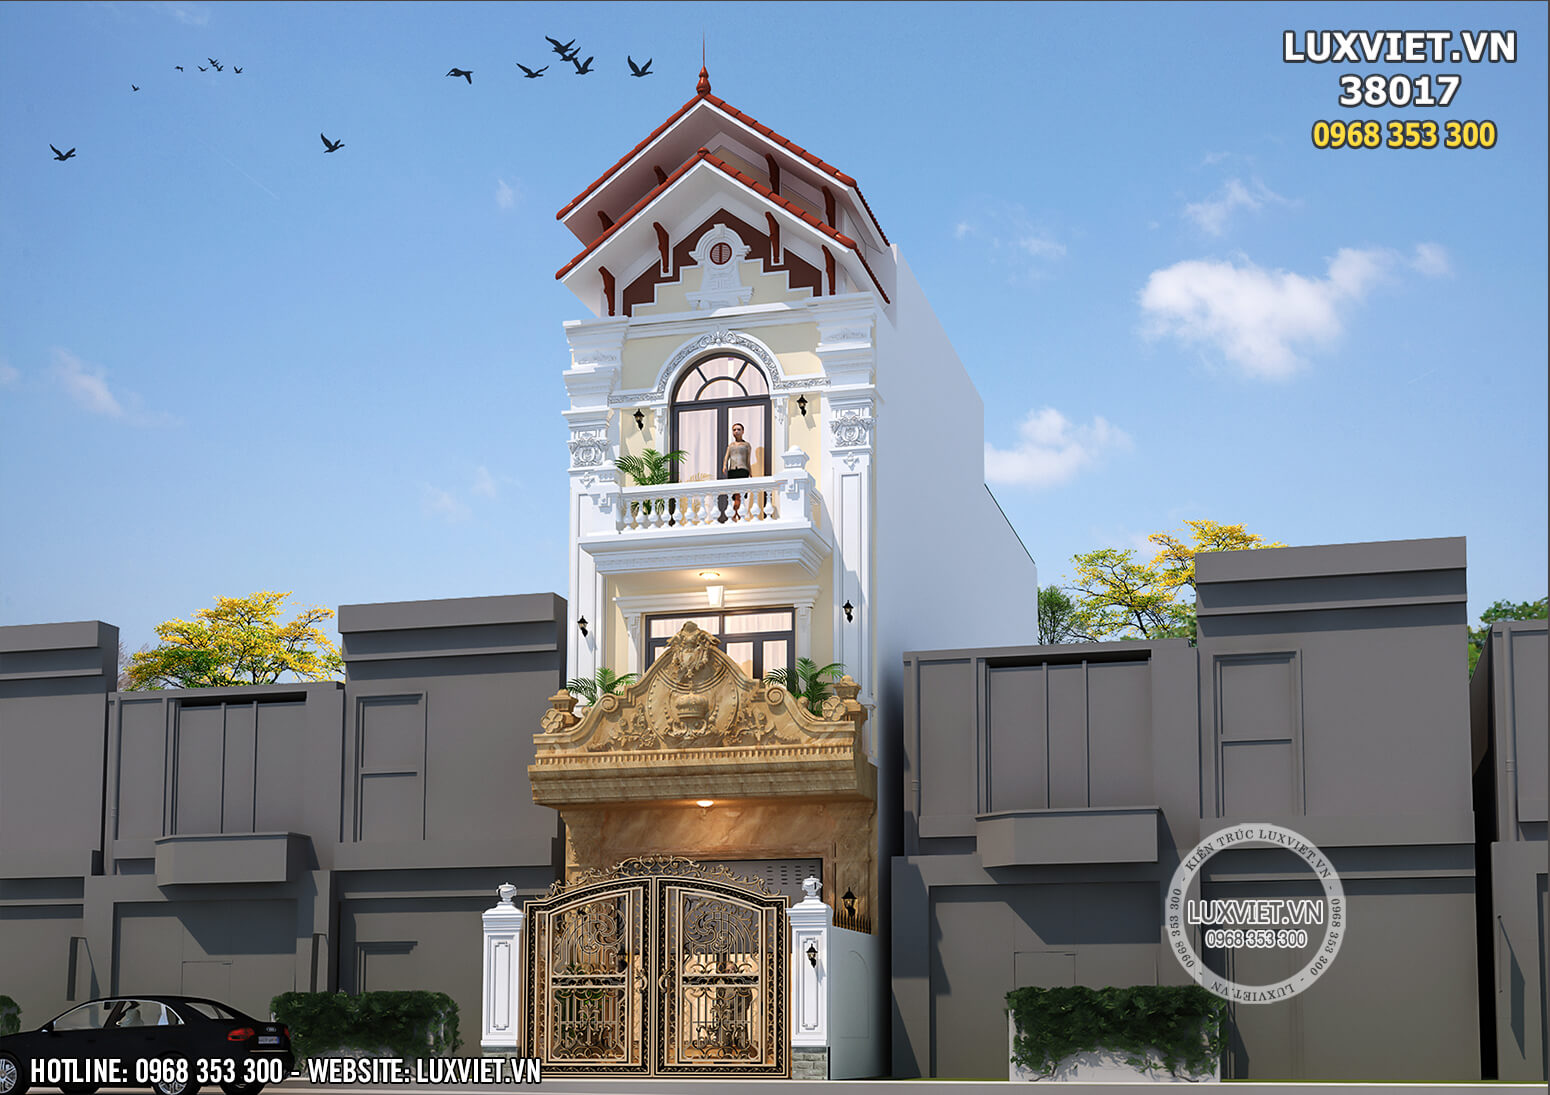 Mẫu thiết kế nhà phố 3 tầng tân cổ điển đẹp mái Thái - Mã số: LuxViet 38017